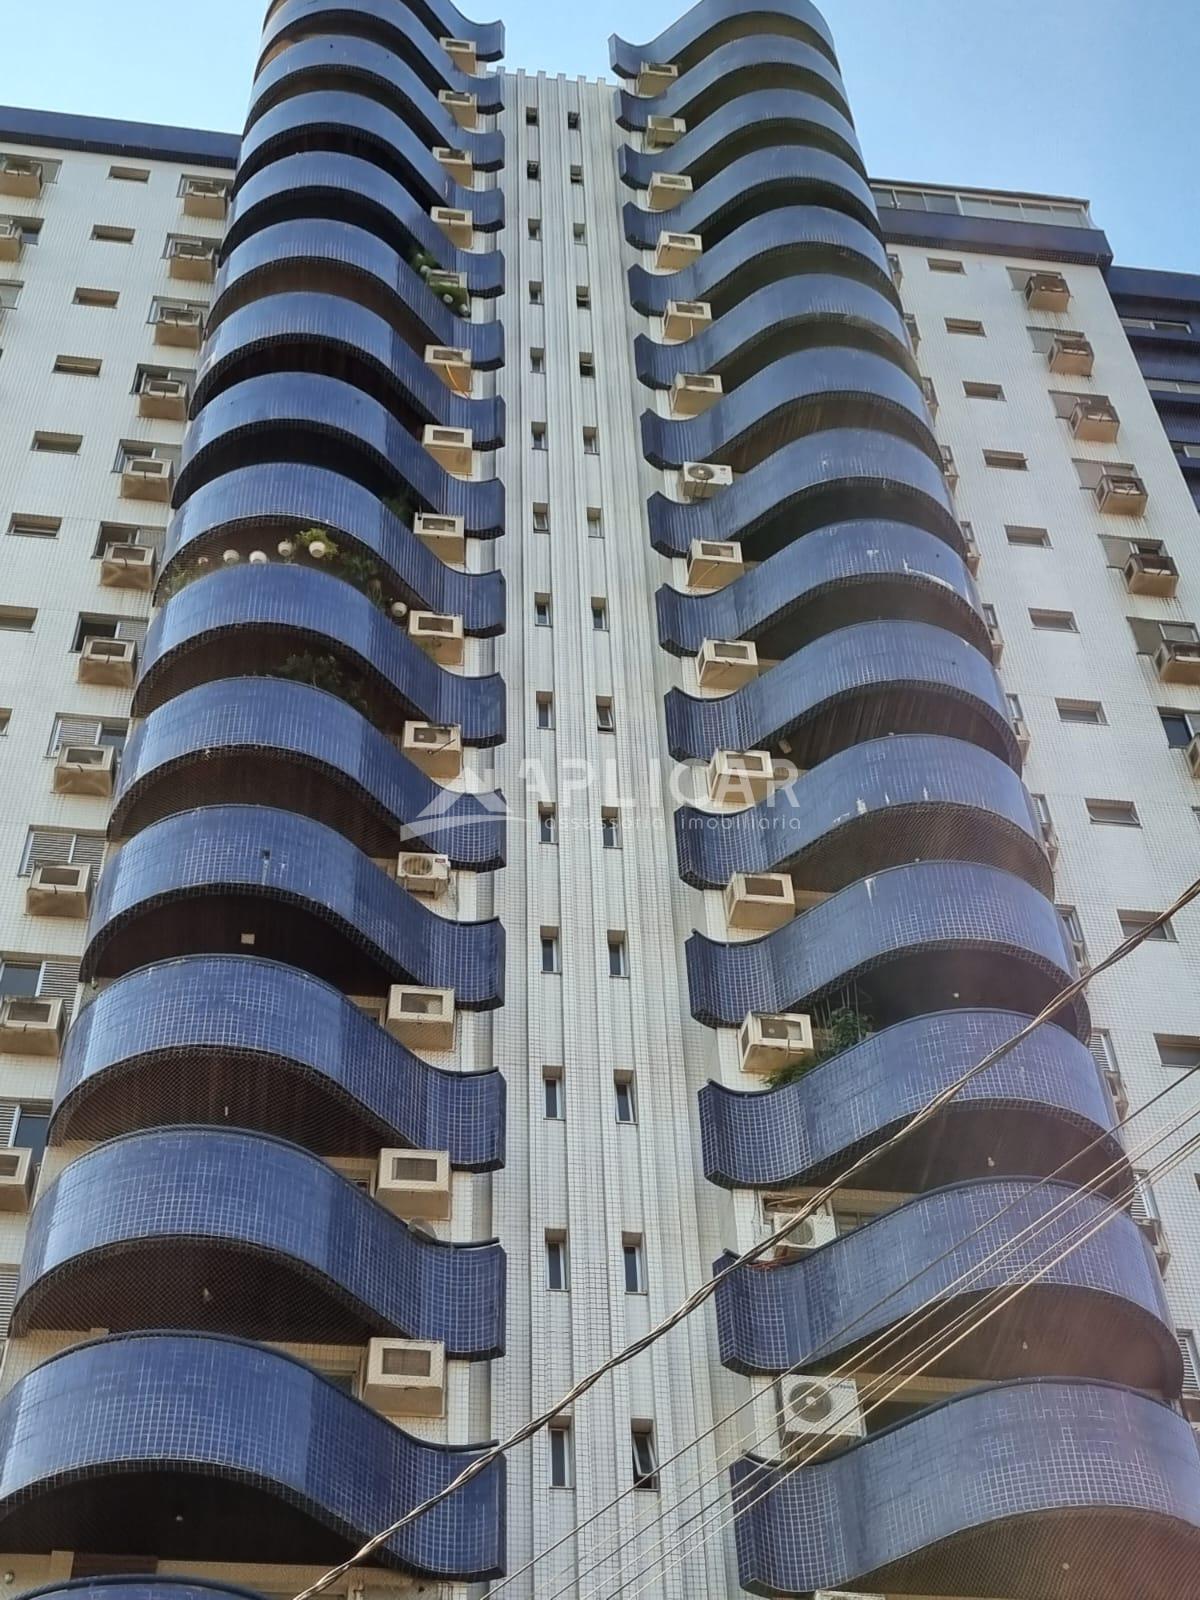 Apartamento no Edifício Torre Azul à venda no Centro, FOZ DO I...